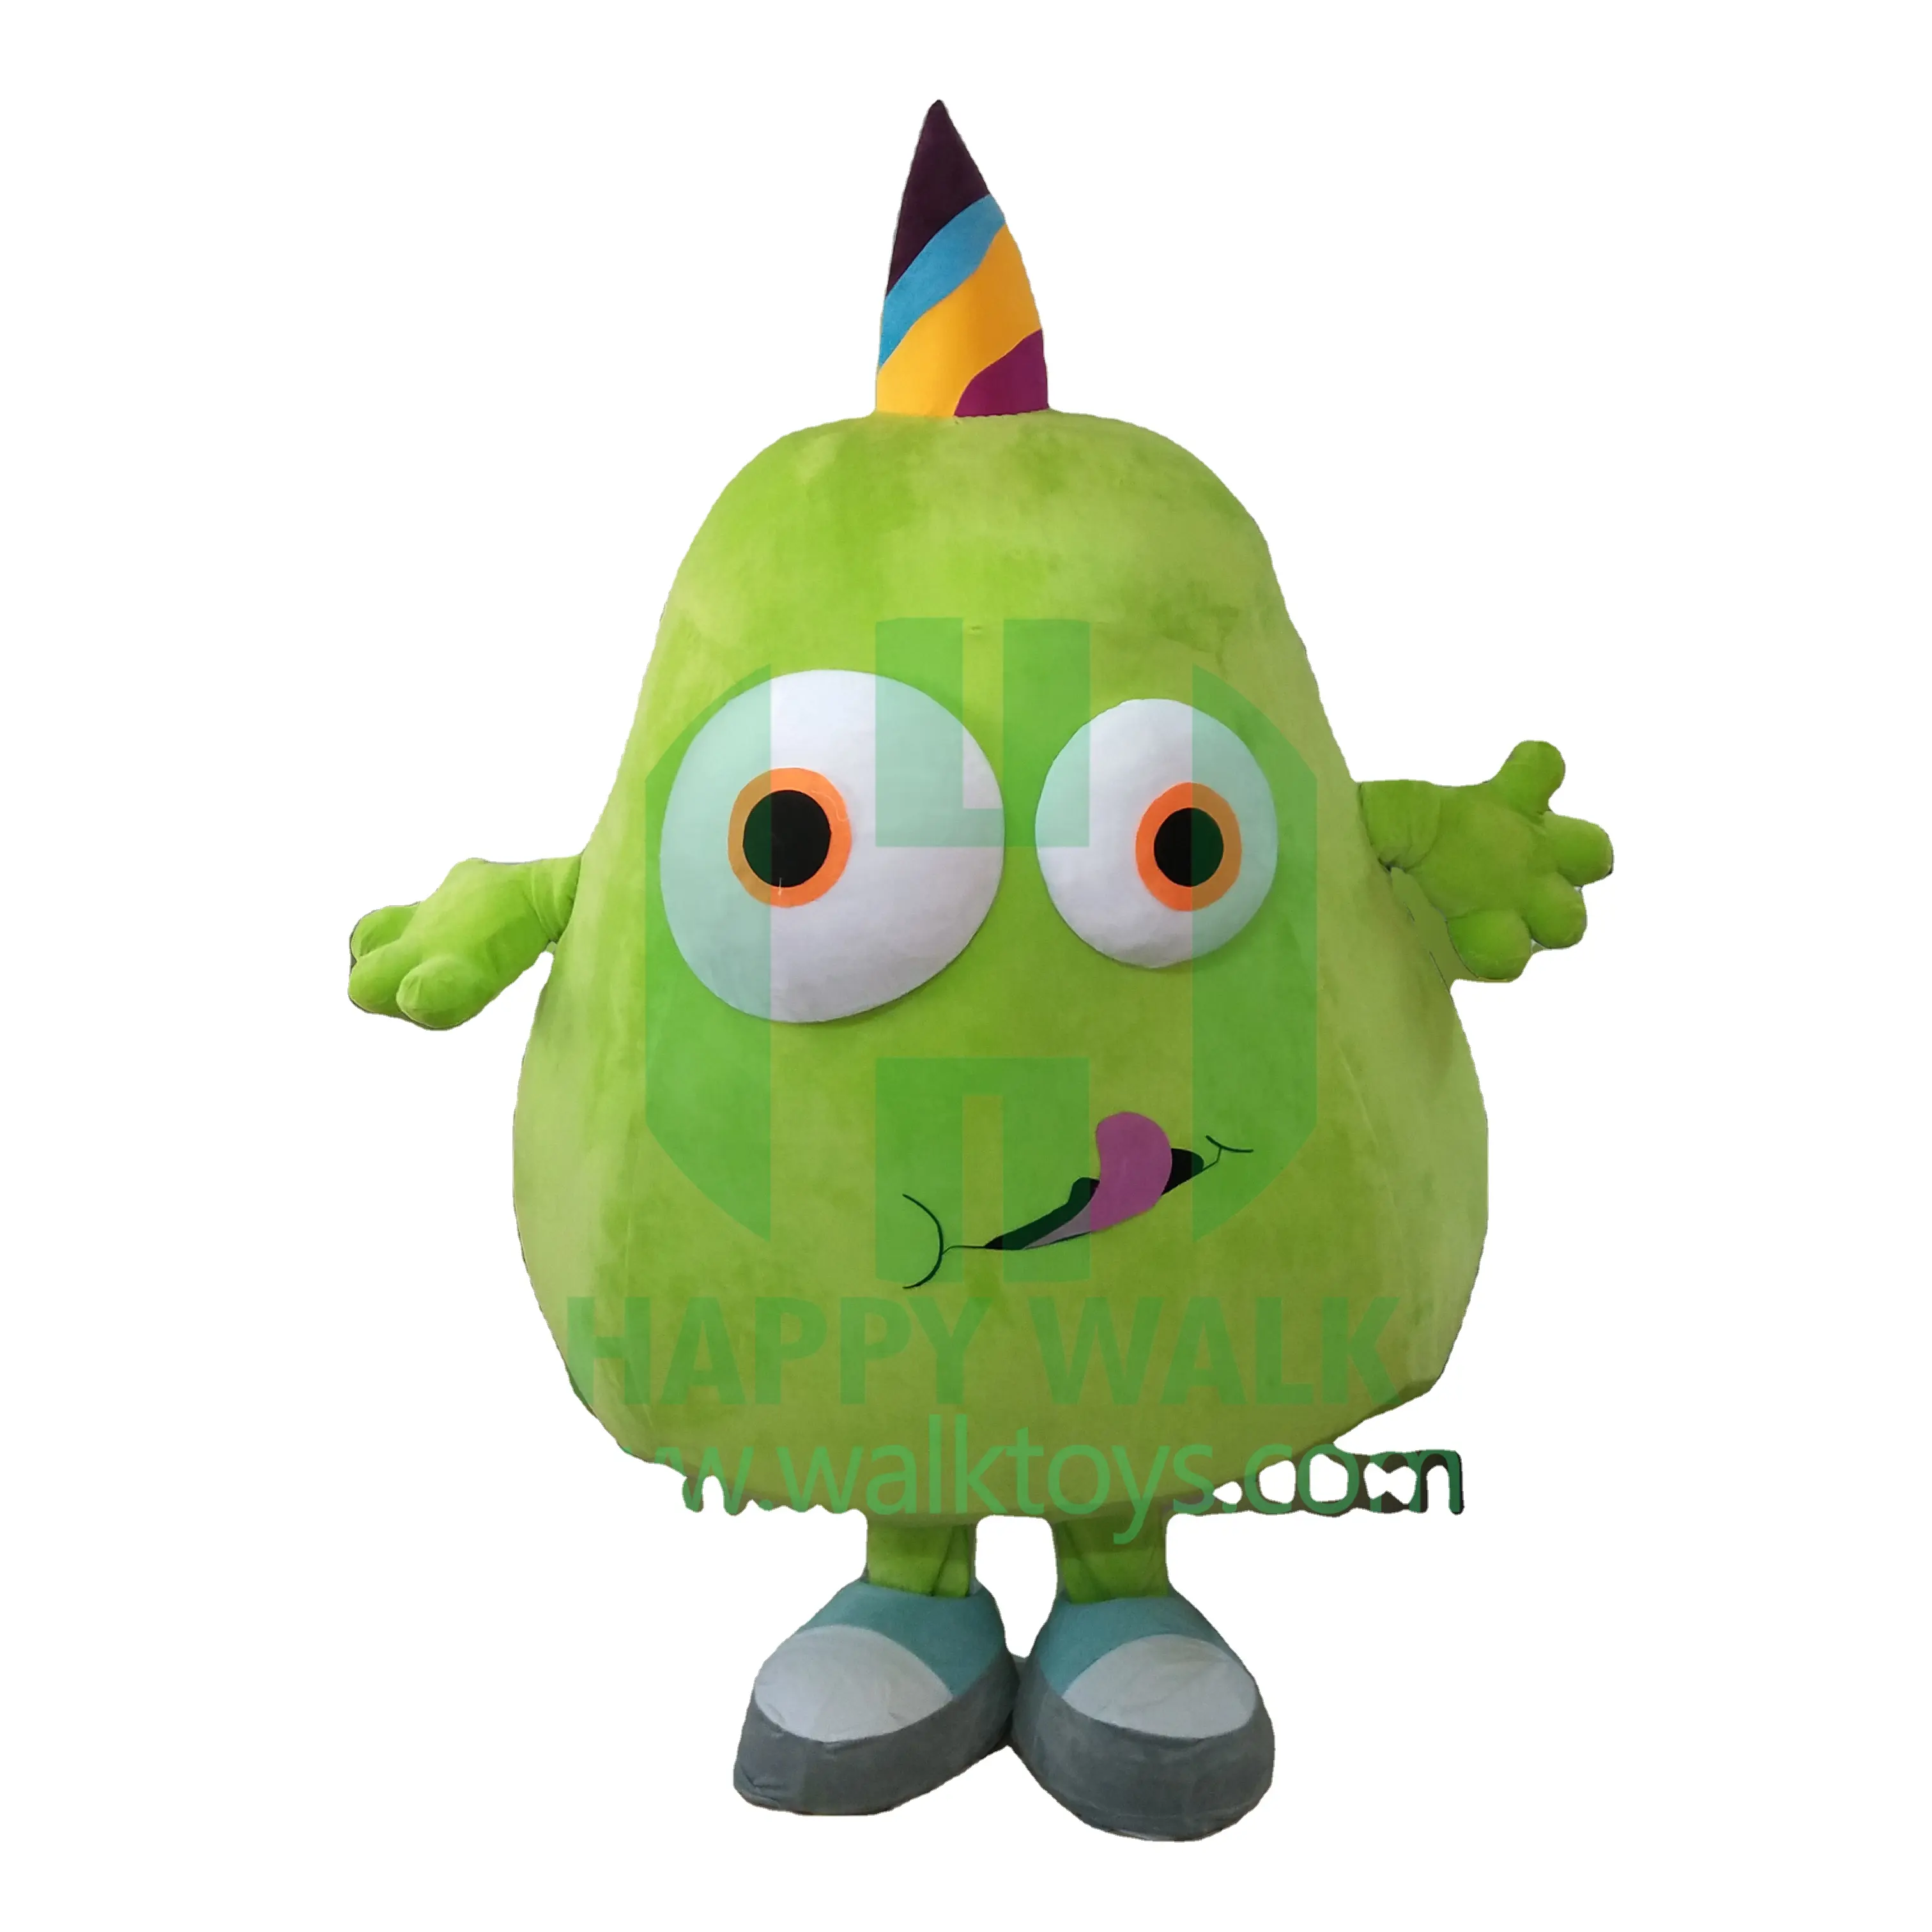 Disfraz de Mascota de frutas personalizado de pera verde disfraz de Mascota de fruta gigante inflable